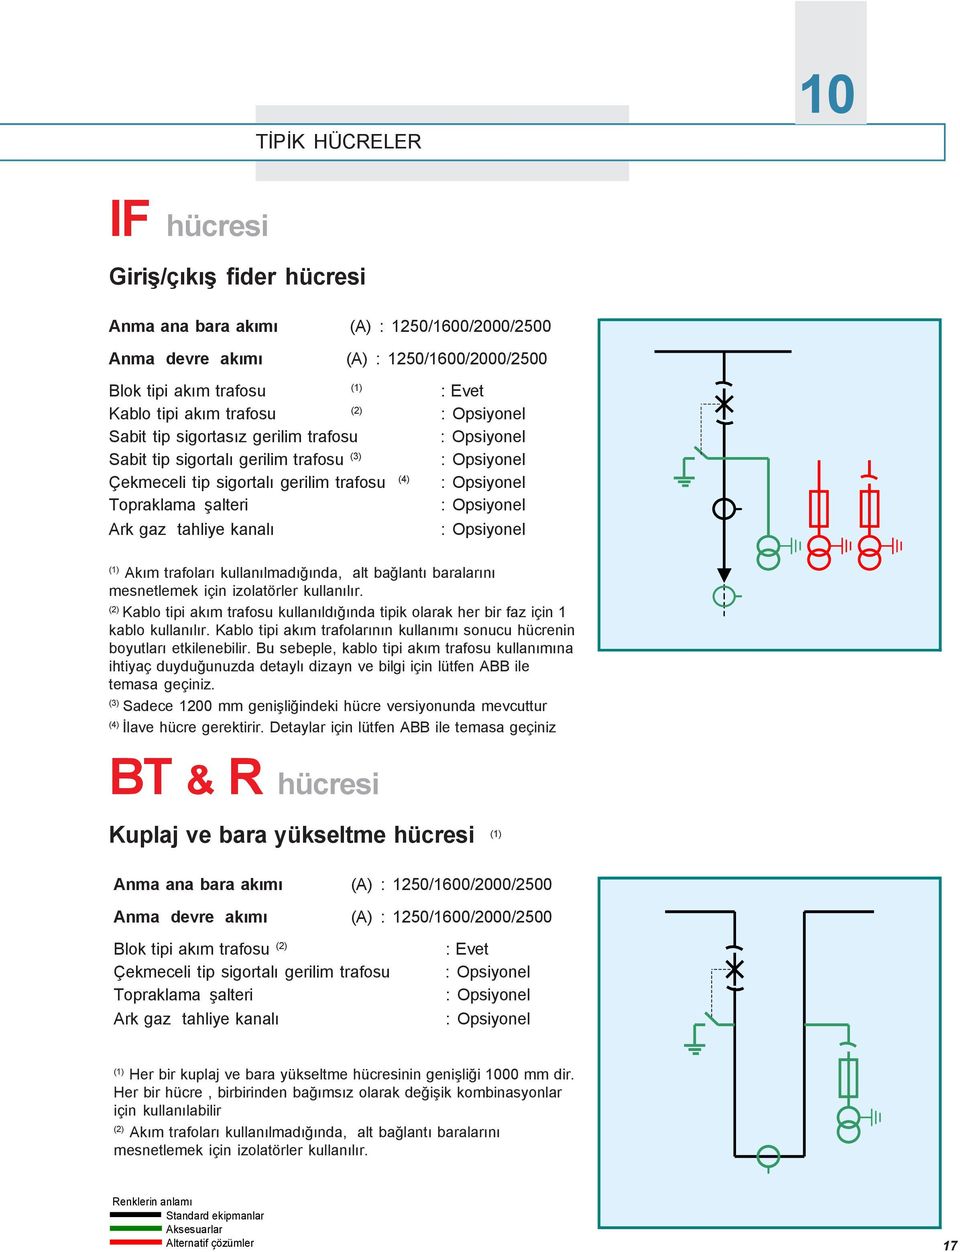 kullanýlmadýðýnda, alt baðlantý baralarýný mesnetlemek için izolatörler kullanýlýr. (2) Kablo tipi akým trafosu kullanýldýðýnda tipik olarak her bir faz için 1 kablo kullanýlýr.